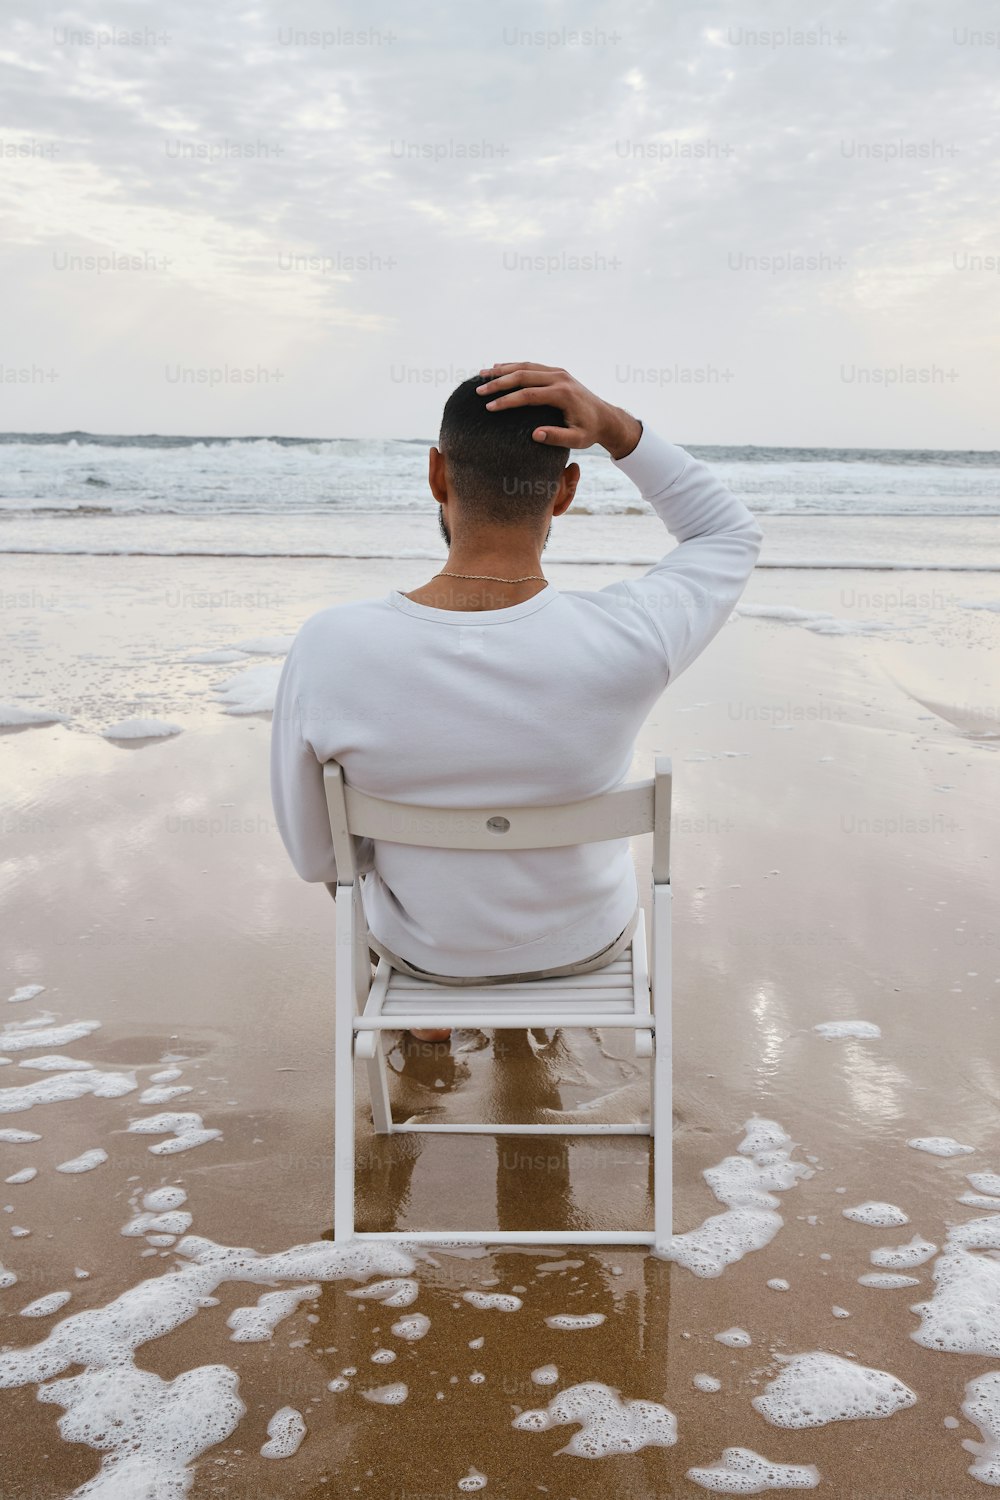 해변의 의자에 앉아 있는 남자